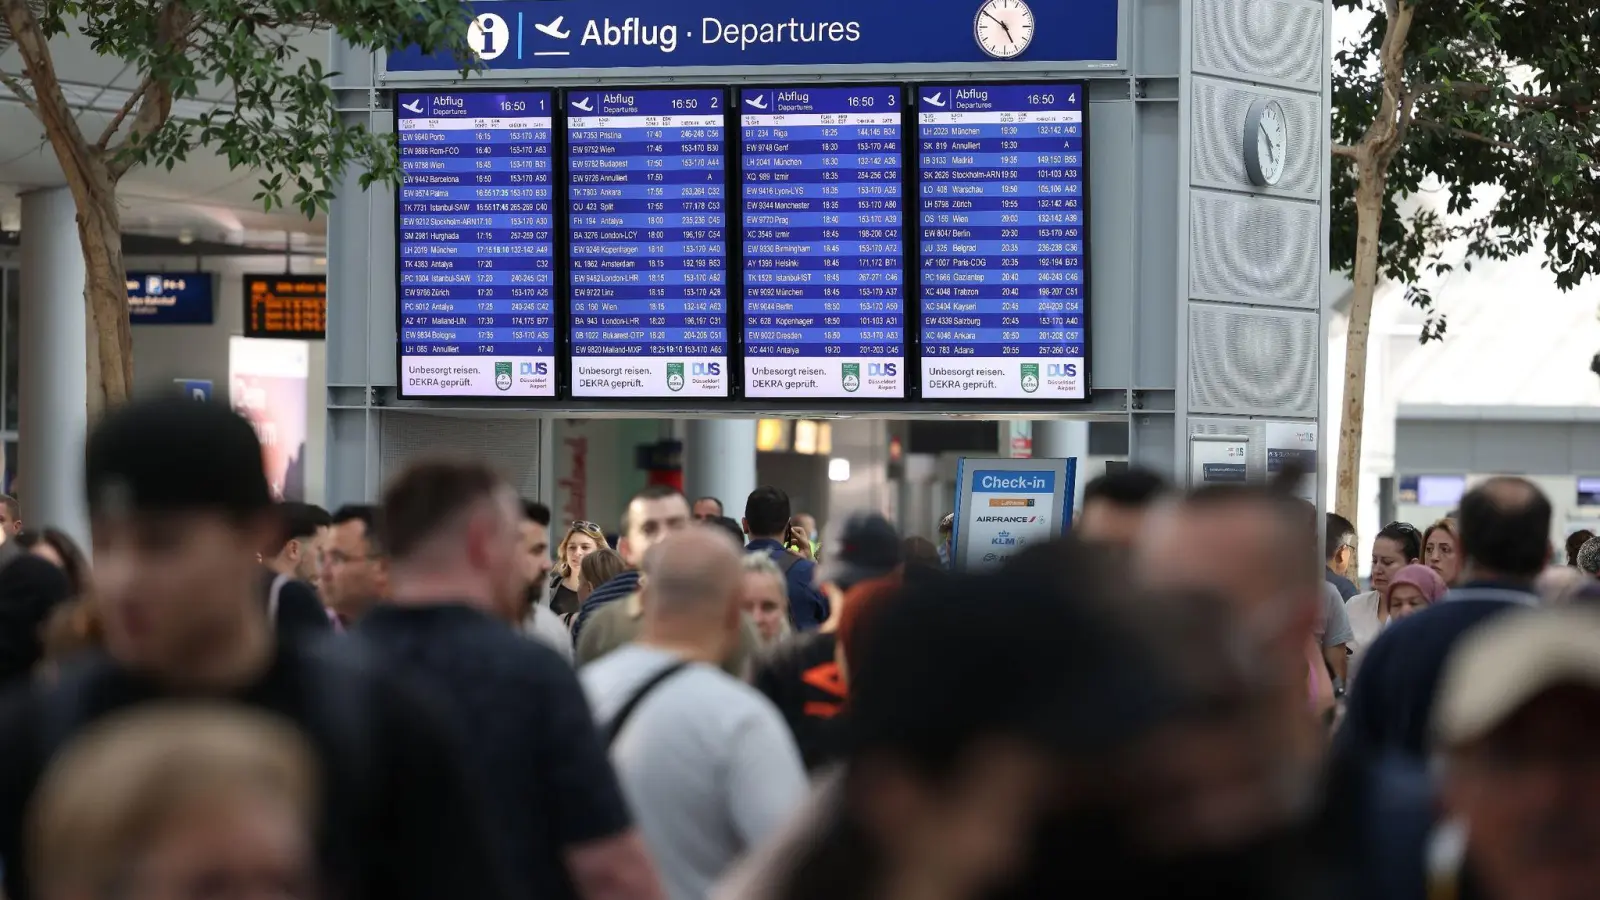 Reisende gehen durch den Flughafen Düsseldorf. Der Ferienstart im bevölkerungsreichsten Bundesland Nordrhein-Westfalen dürfte am Wochenende zu stundenlangen Wartezeiten führen. (Foto: David Young/dpa)